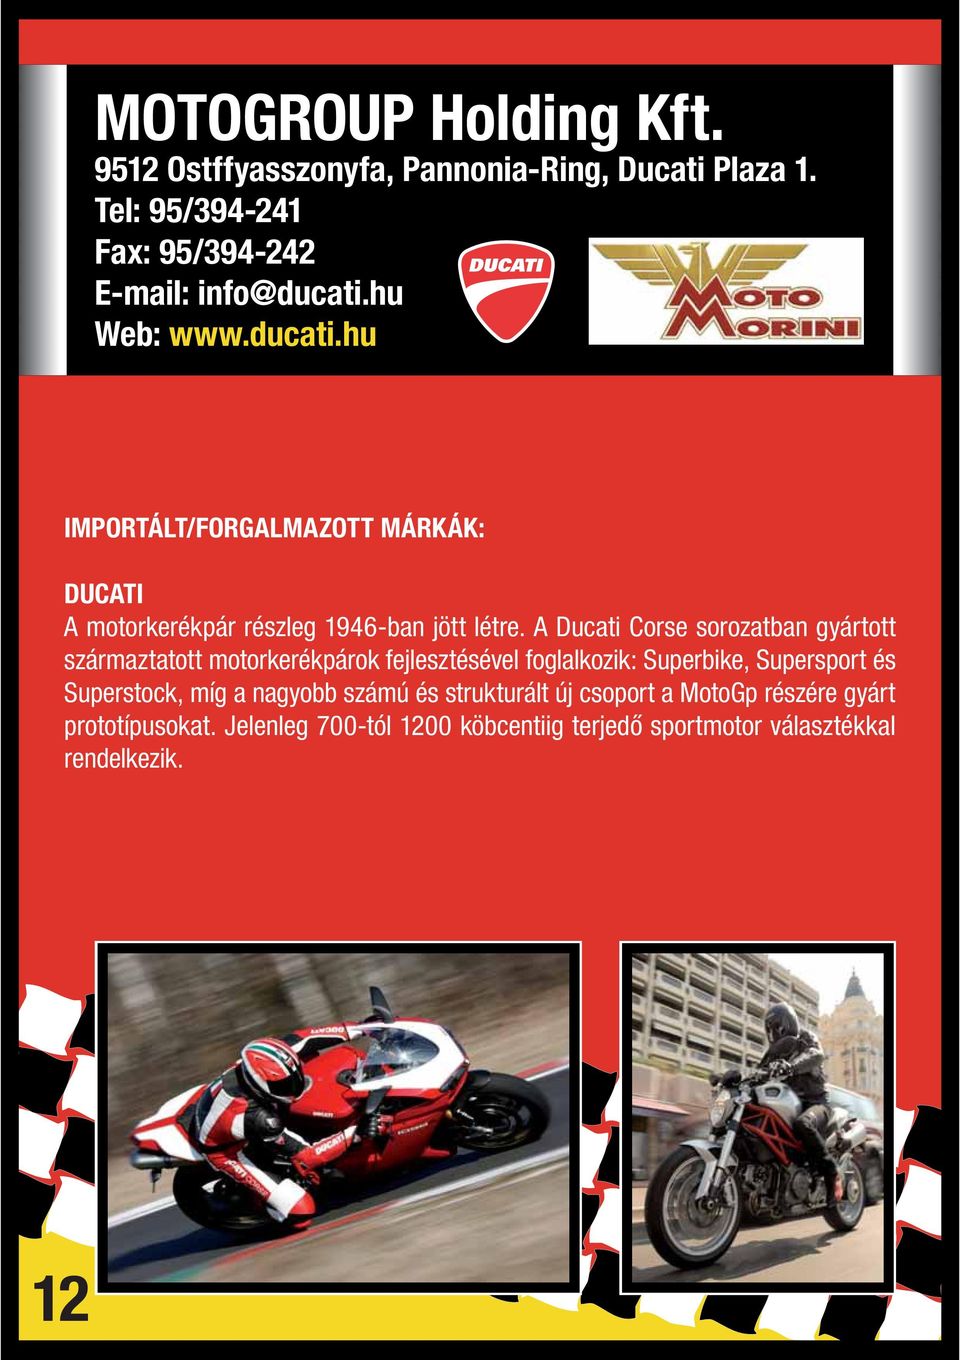 A Ducati Corse sorozatban gyártott származtatott motorkerékpárok fejlesztésével foglalkozik: Superbike, Supersport és Superstock,